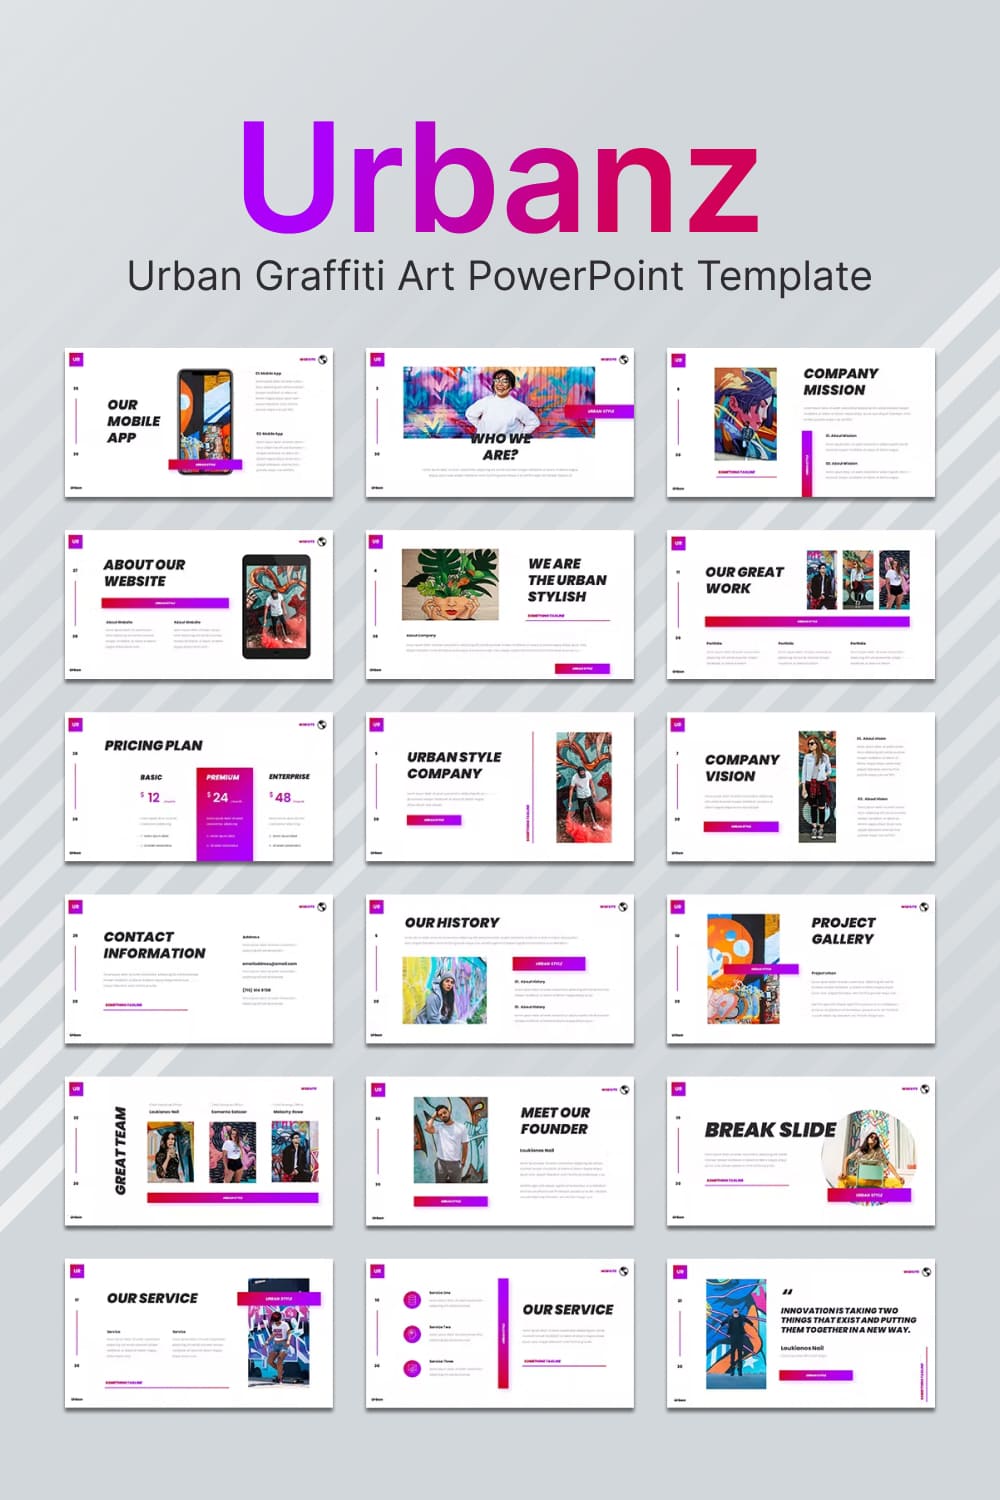 Urbanz urban graffiti art powerpoint template - pinterest image preview.